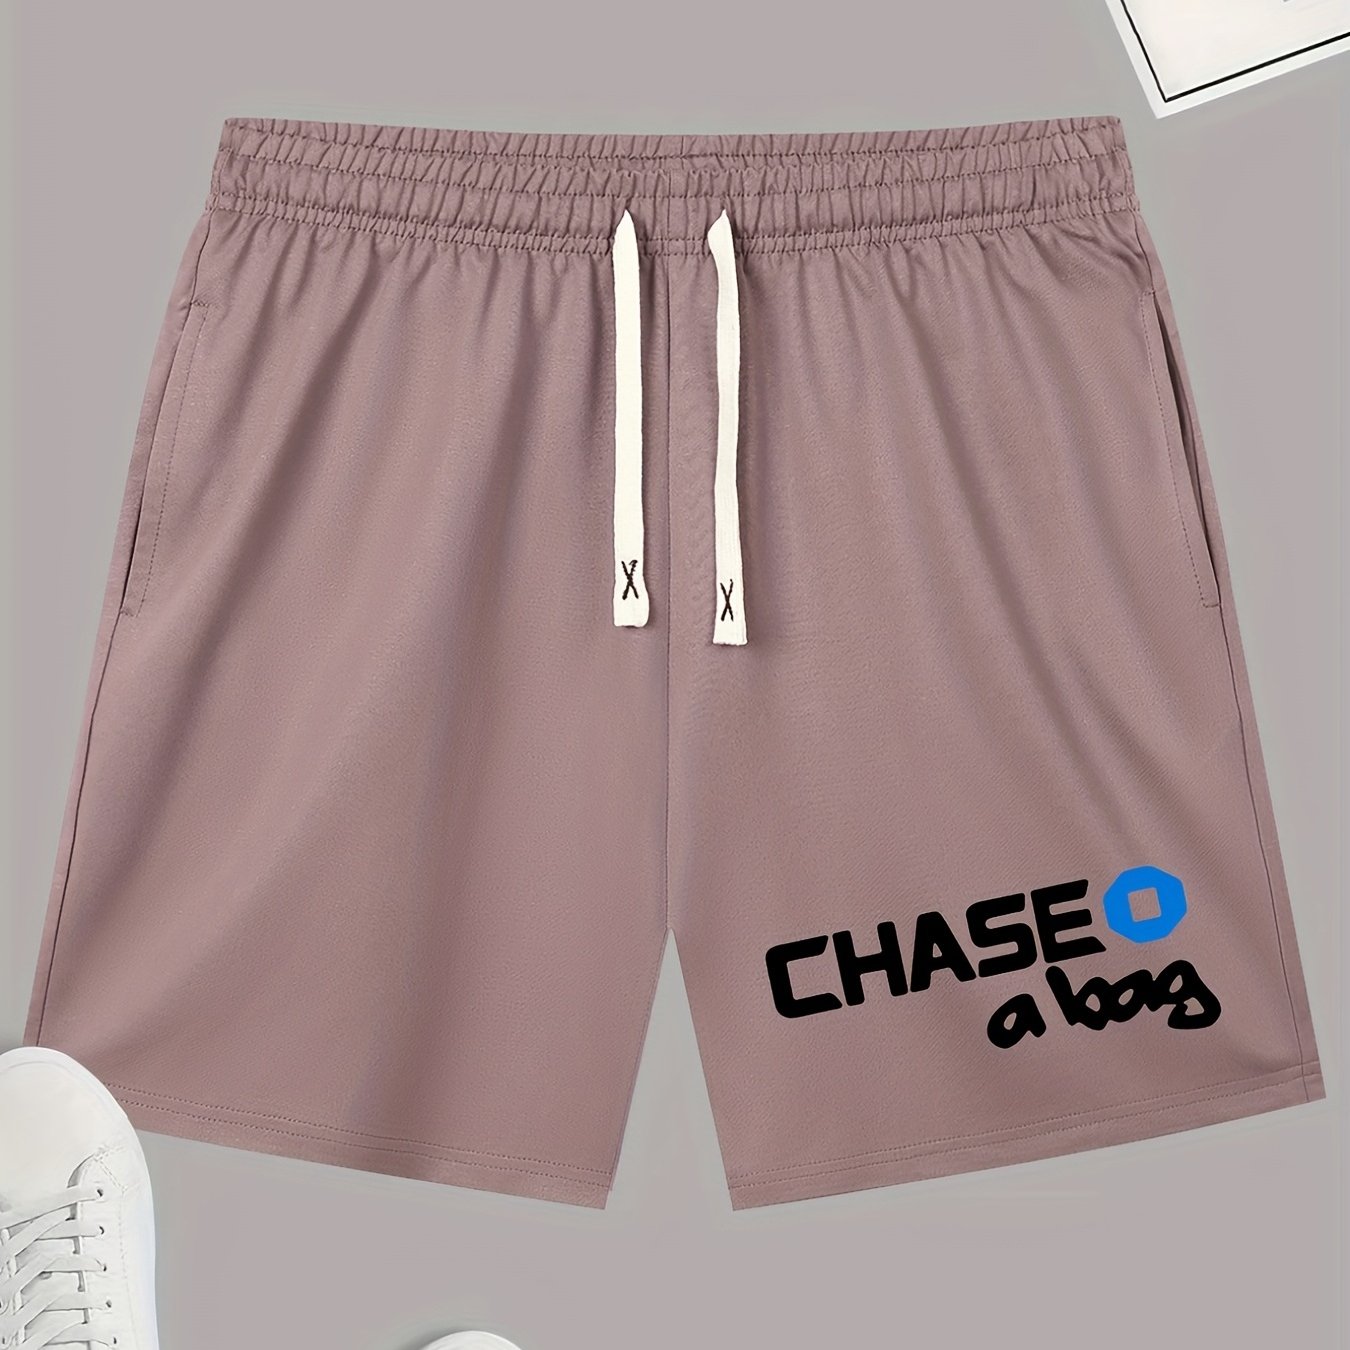 Chase Atlantic Boxers